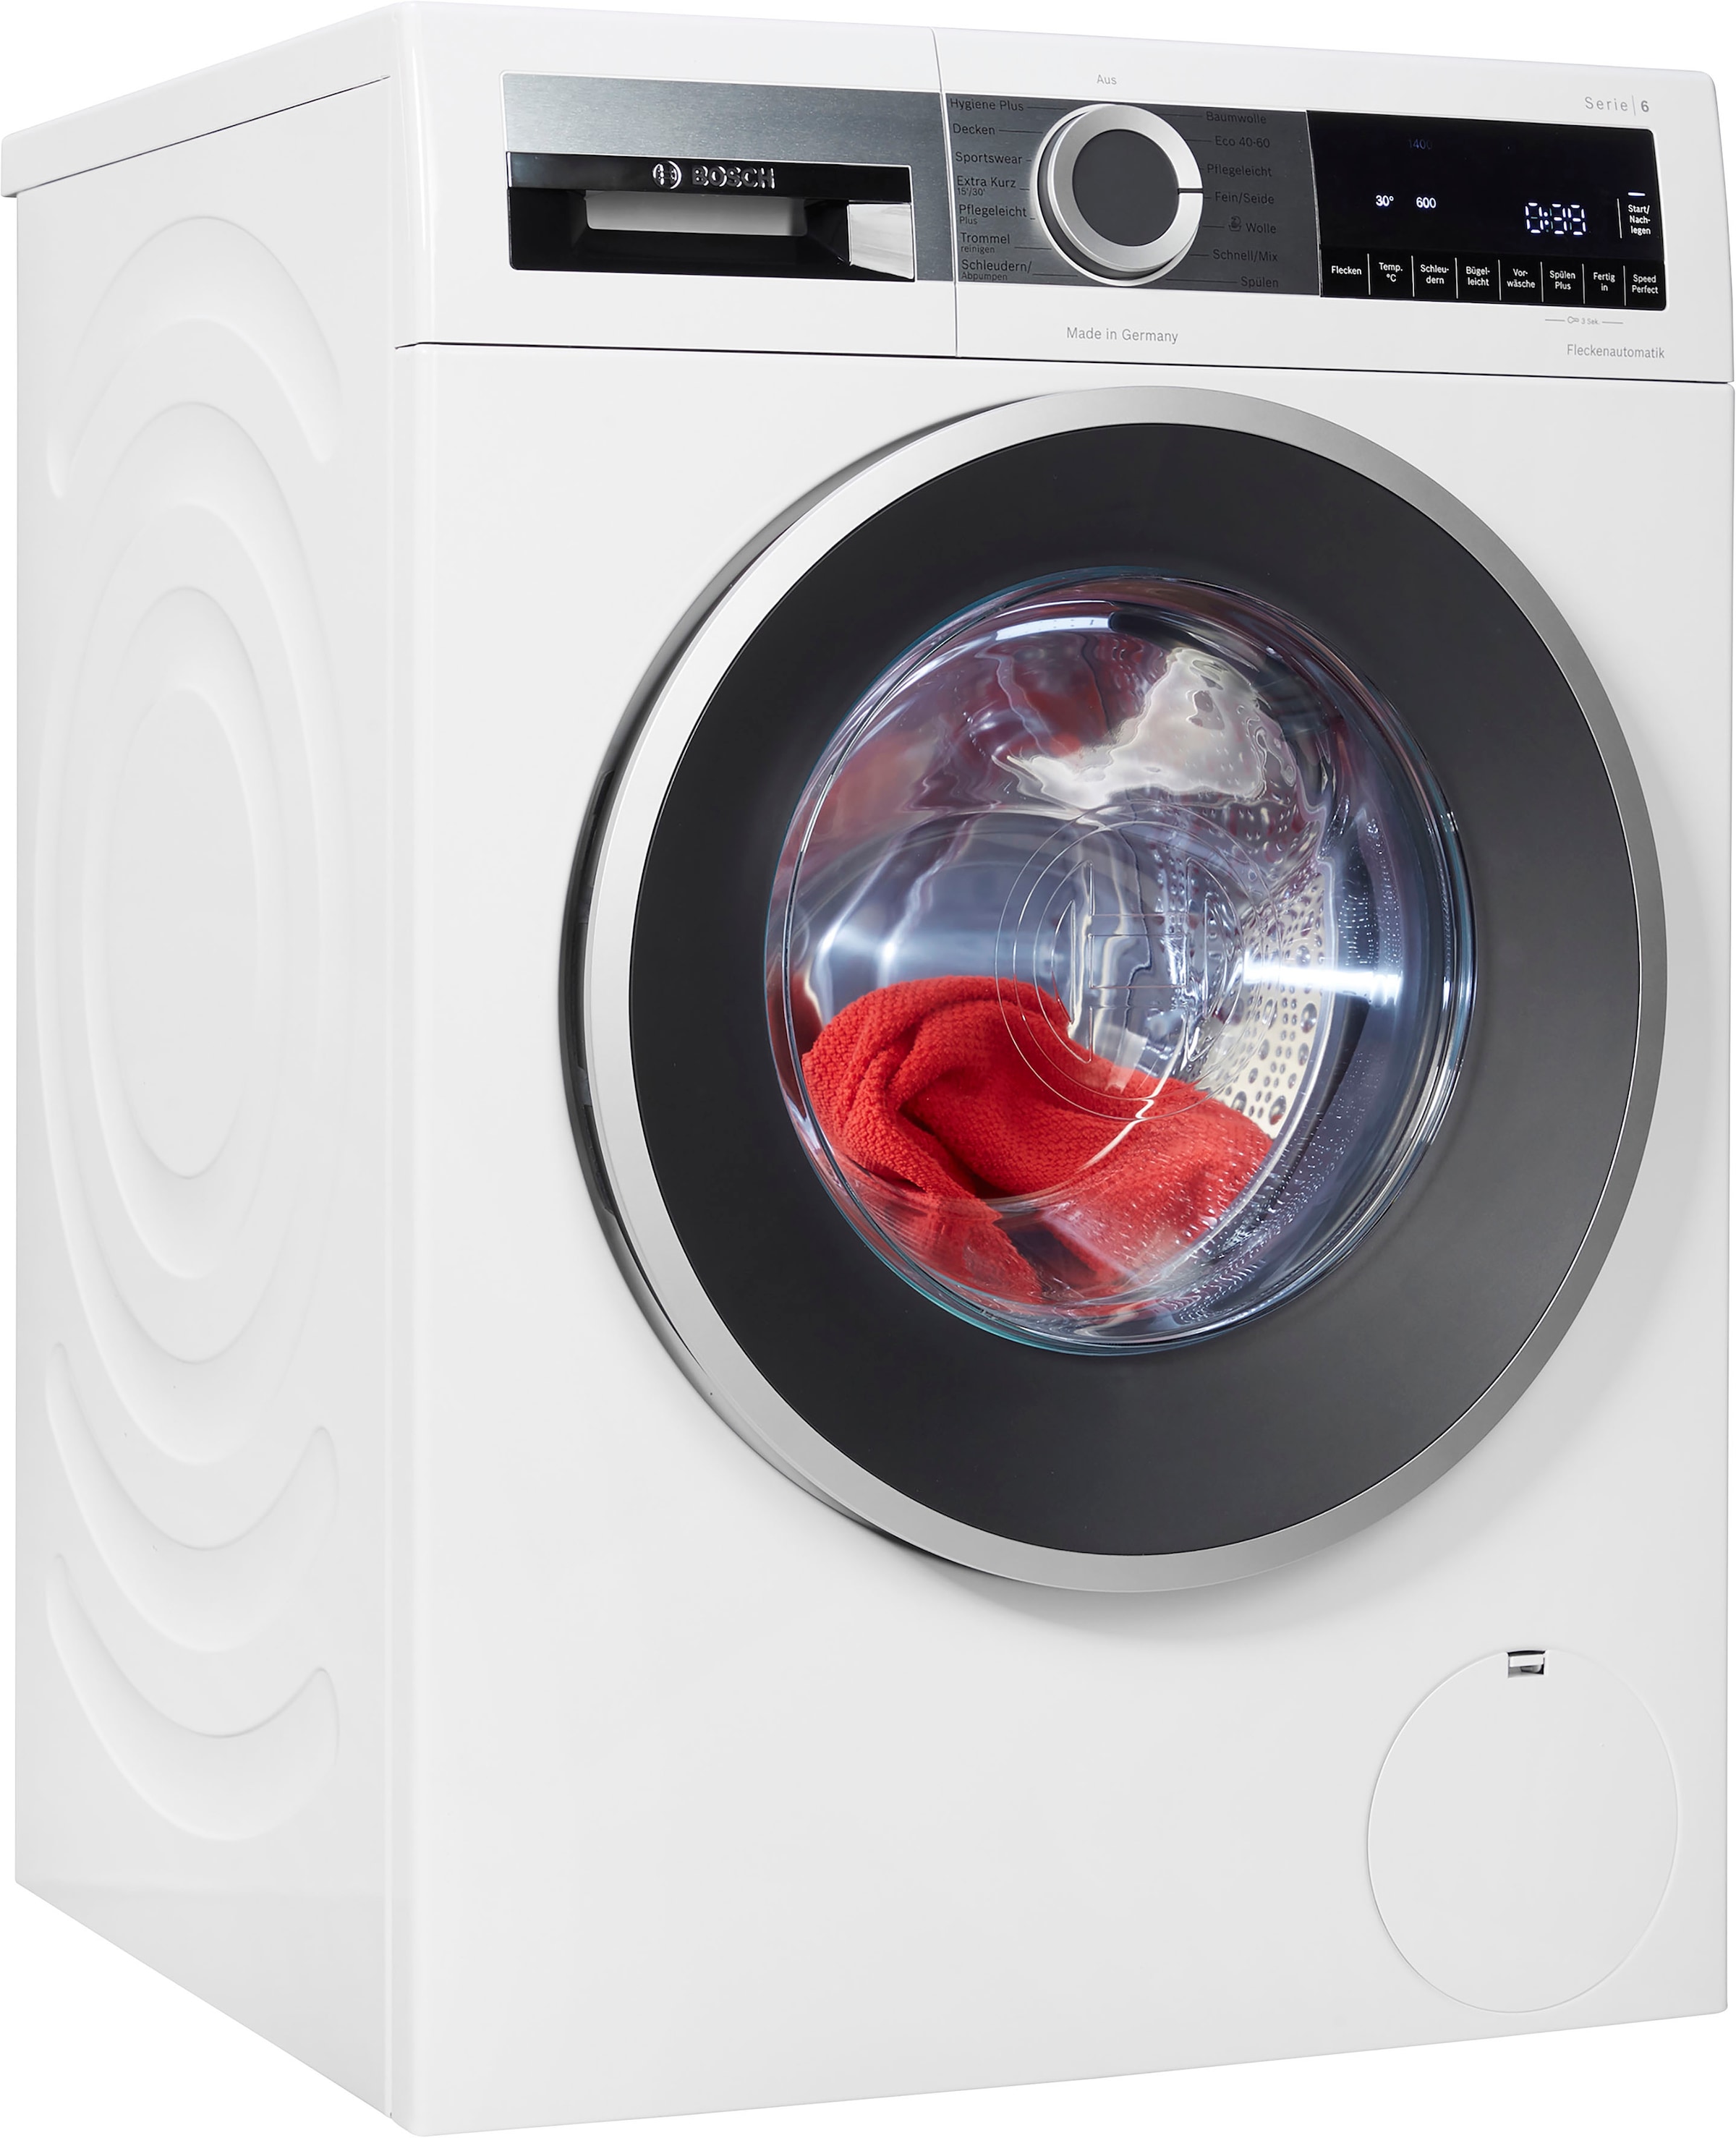 SIEMENS Waschmaschine »WG44G2MECO«, WG44G2MECO, 1400 Garantie, 9 4 U/min, Jahre Germany in kaufen Made kg, auf Raten